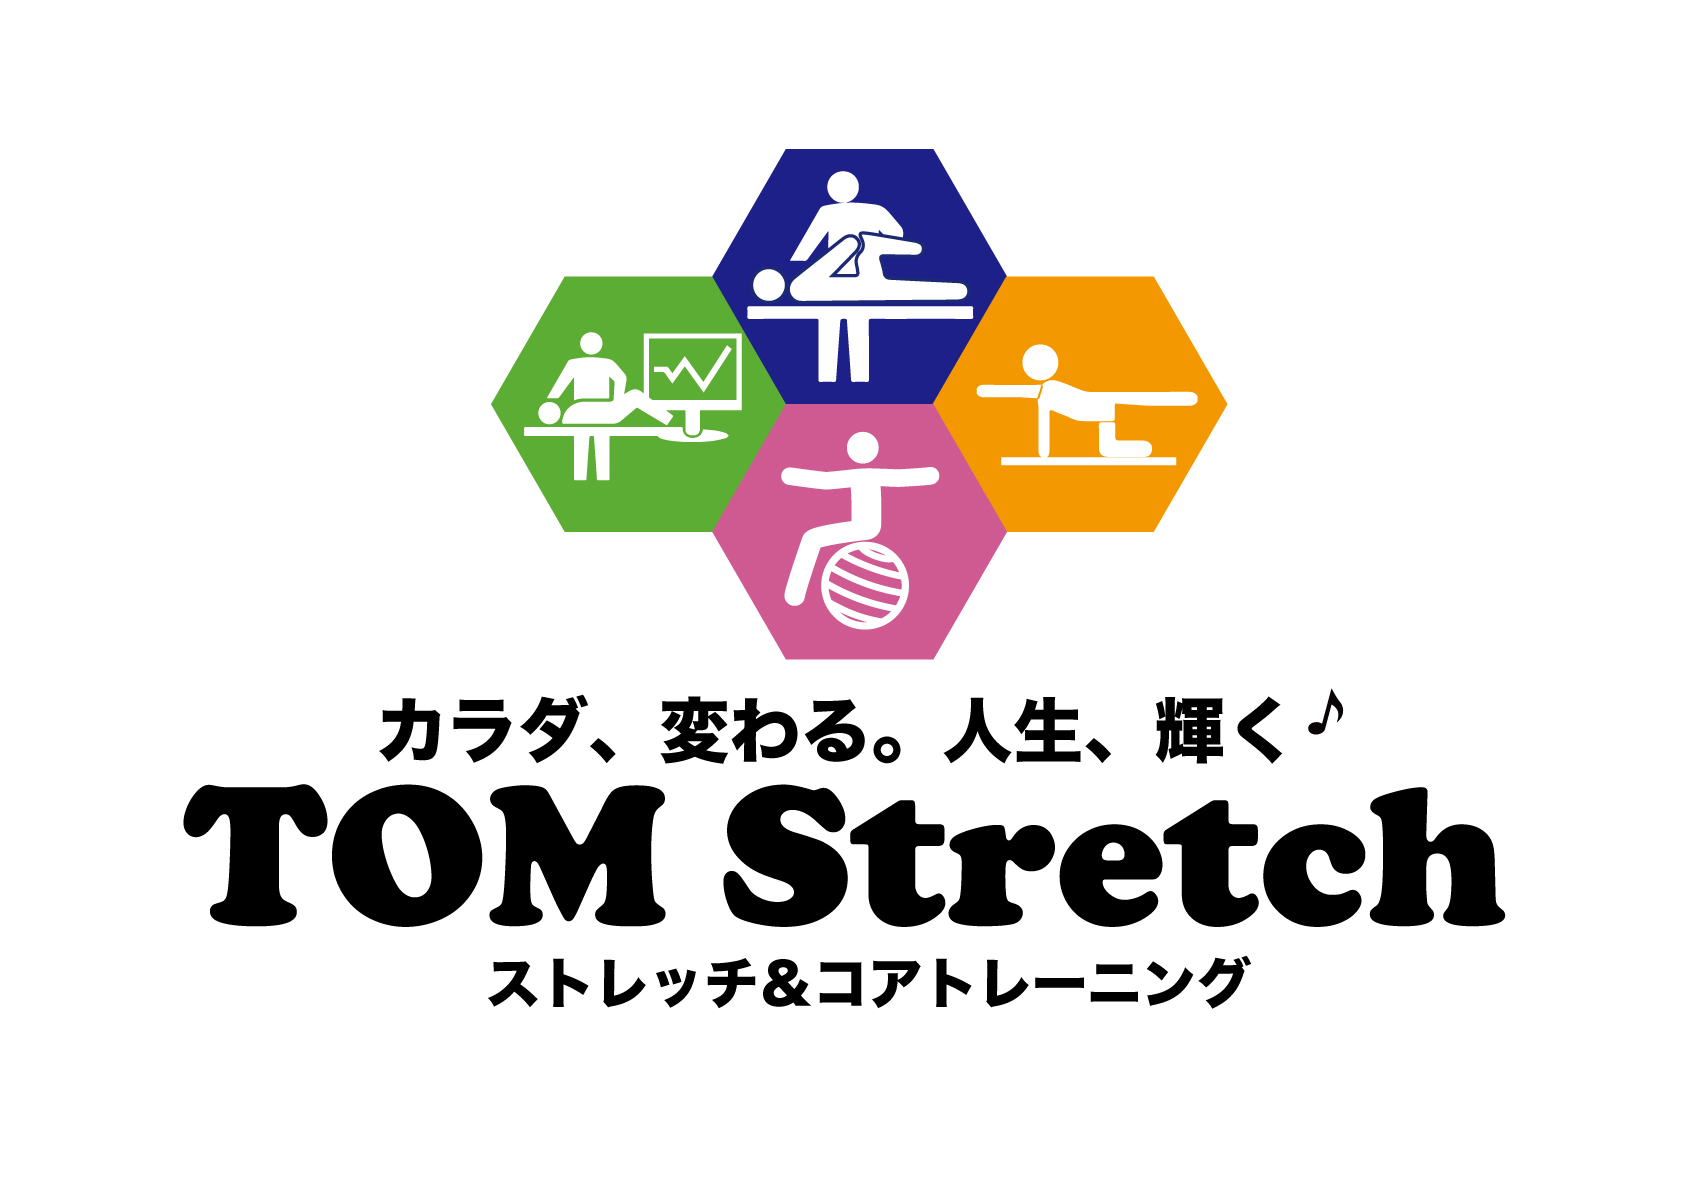 TOM GOLF Stretch | トムストレッチ